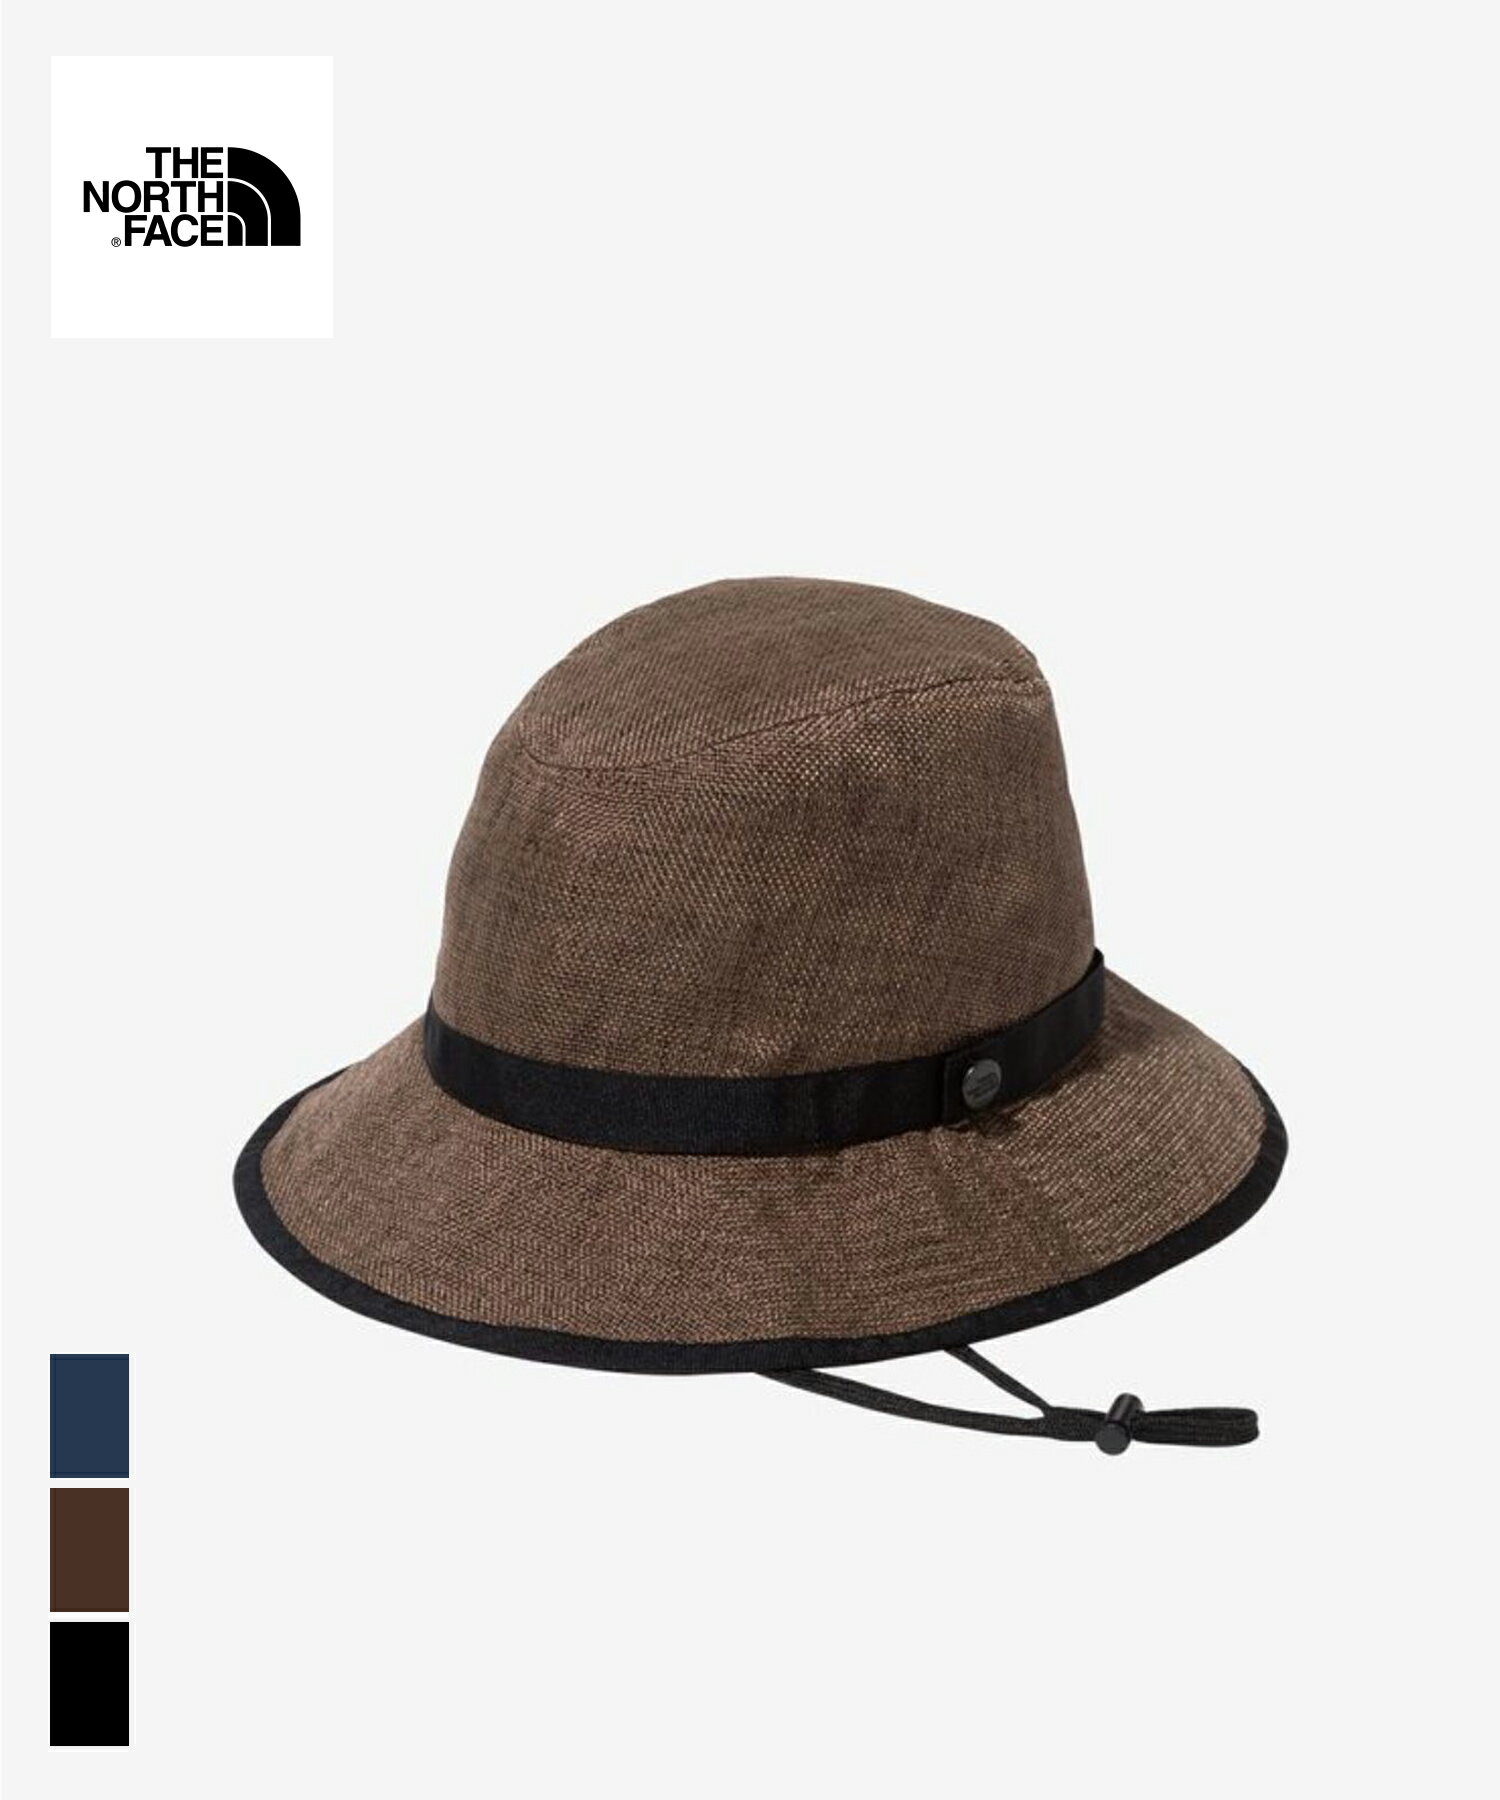 THE NORTH FACE HIKE Hat (NN02341)国内正規品 ユニセックス グッズ ヘッドウェア 帽子 日よけ アウトドア カジュアル シンプル ナチュラル ポリエステル M/L ベージュ ブラウン ブラック ブルー コンパクト収納 春夏 24SP